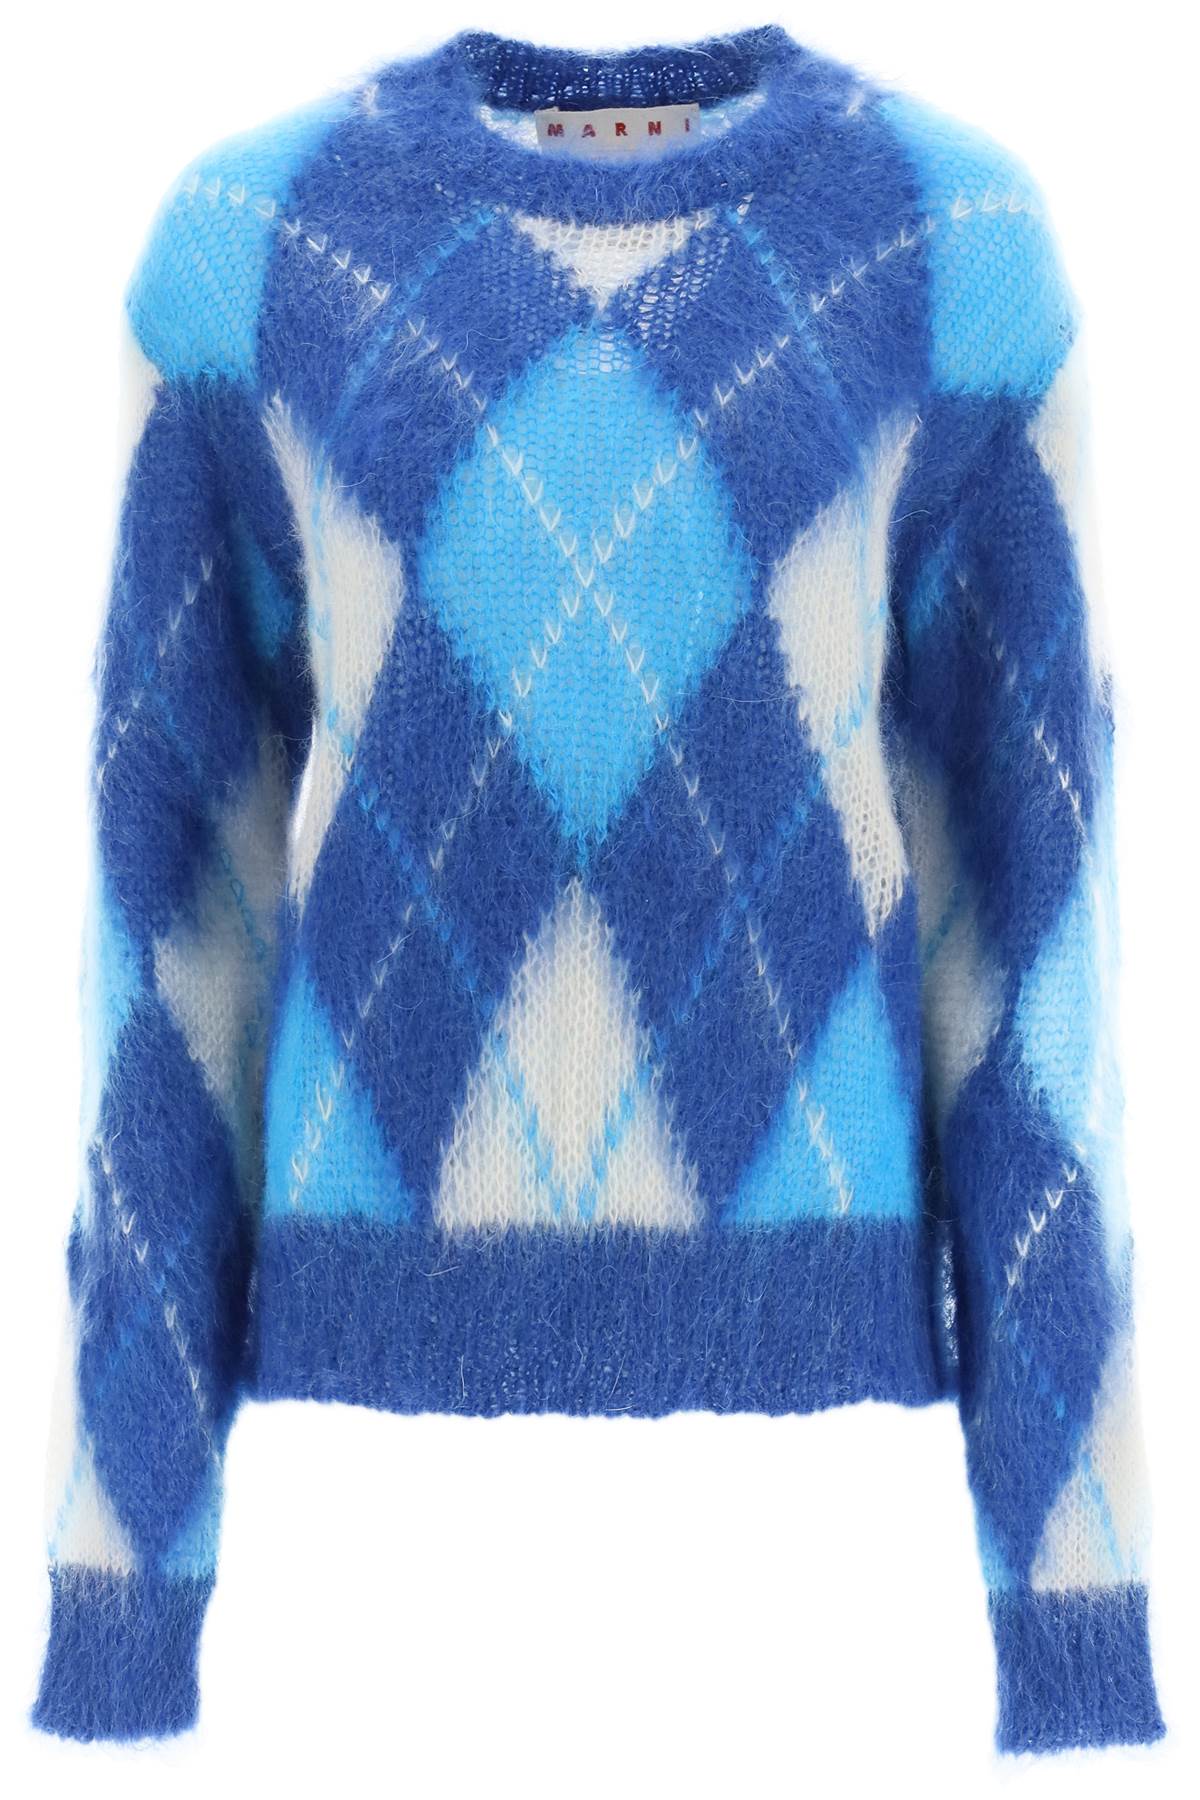 Marni Argyle Mohair Sweater